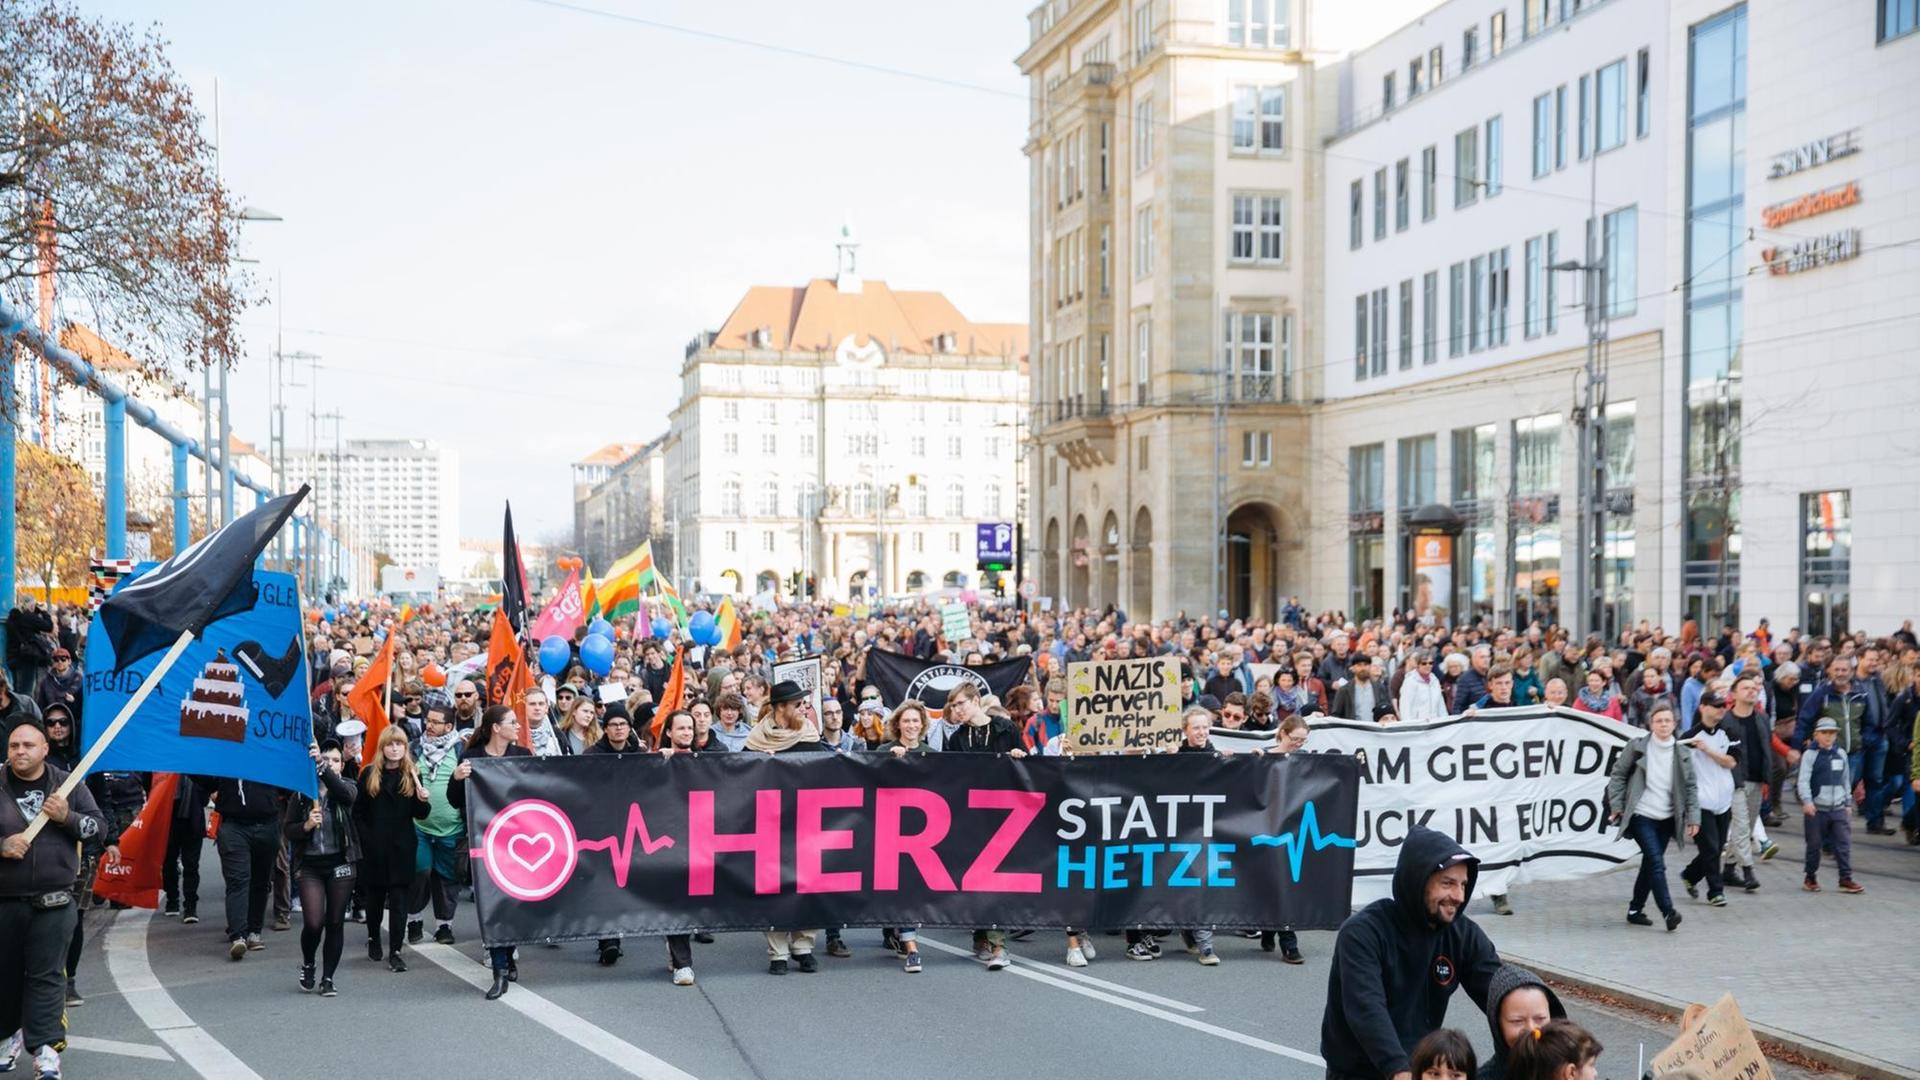 21.10.2018, Sachsen, Dresden: Teilnehmer der Demonstration "Herz statt Hetze" ziehen durch die Dresdner Innenstadt, um zum vierten Jahrestag der Pegida-Bewegung für Weltoffenheit einzutreten